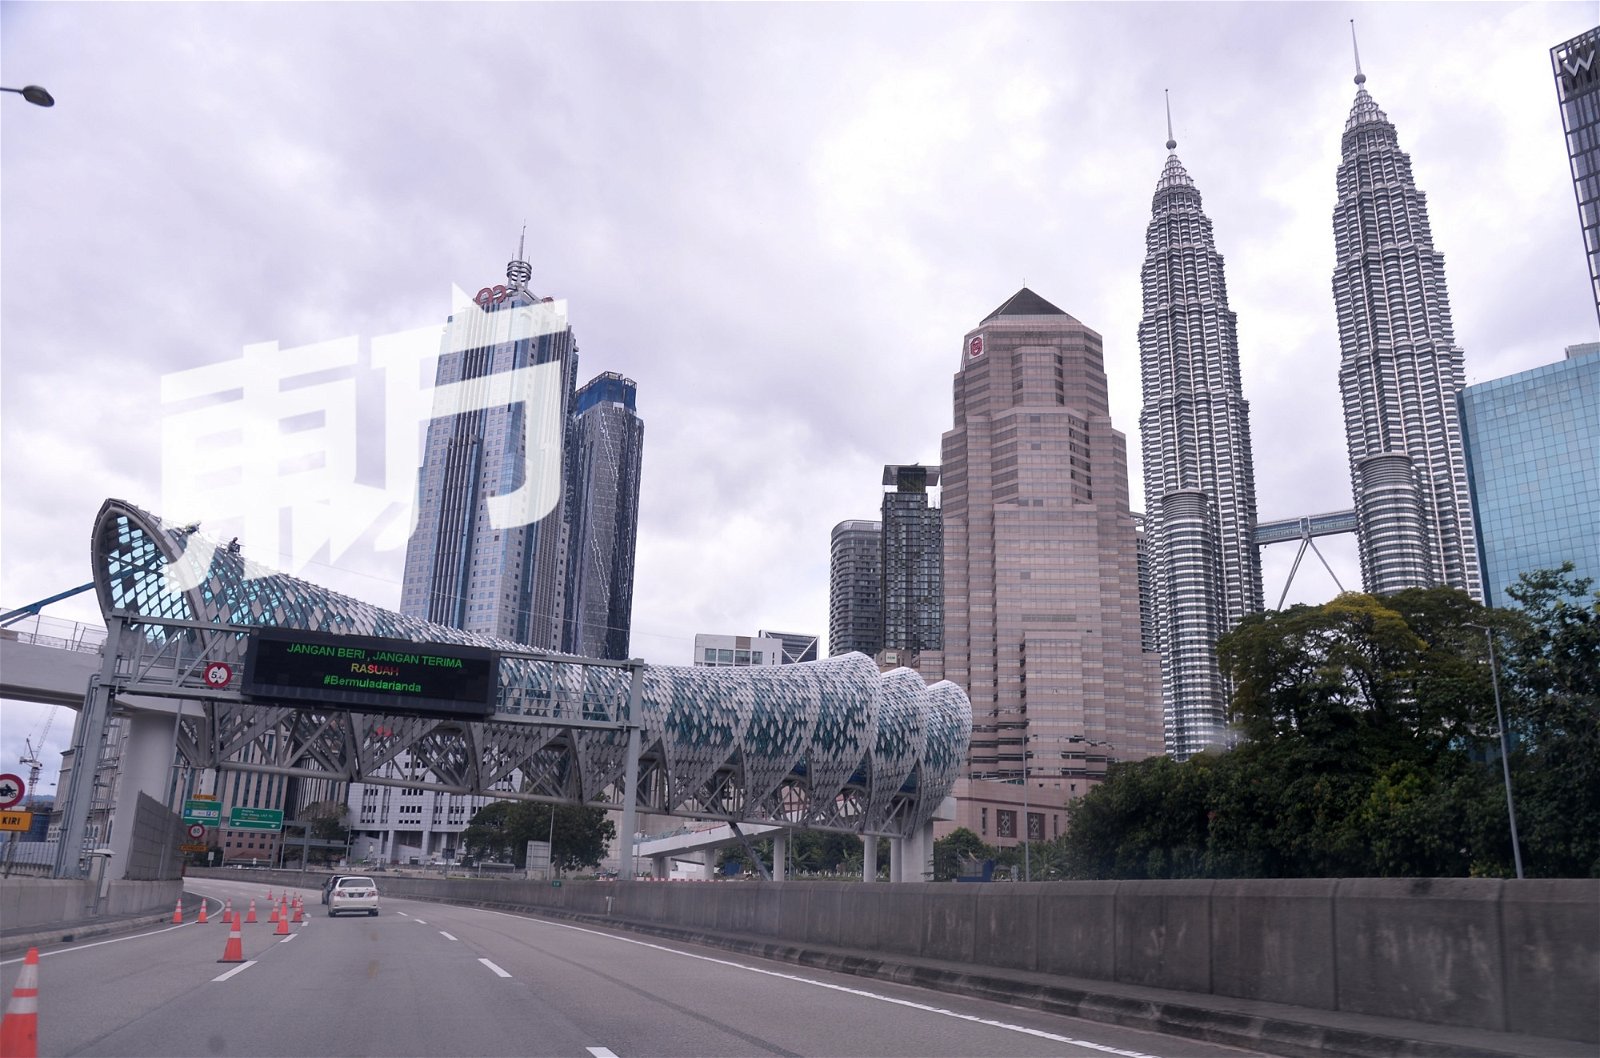 衔接甘榜峇鲁及城中城广场的沙罗马人行高架走道（Saloma Link）也是甘榜峇鲁重建计划的其中一个项目，预计将于今年杪正式启用。 该人行高架走道风景面向吉隆坡城中城，其中69公尺为有盖走道，可同时容纳200人，沿途有4480个LED节能灯光，完成后将是当地的特色地标之一。